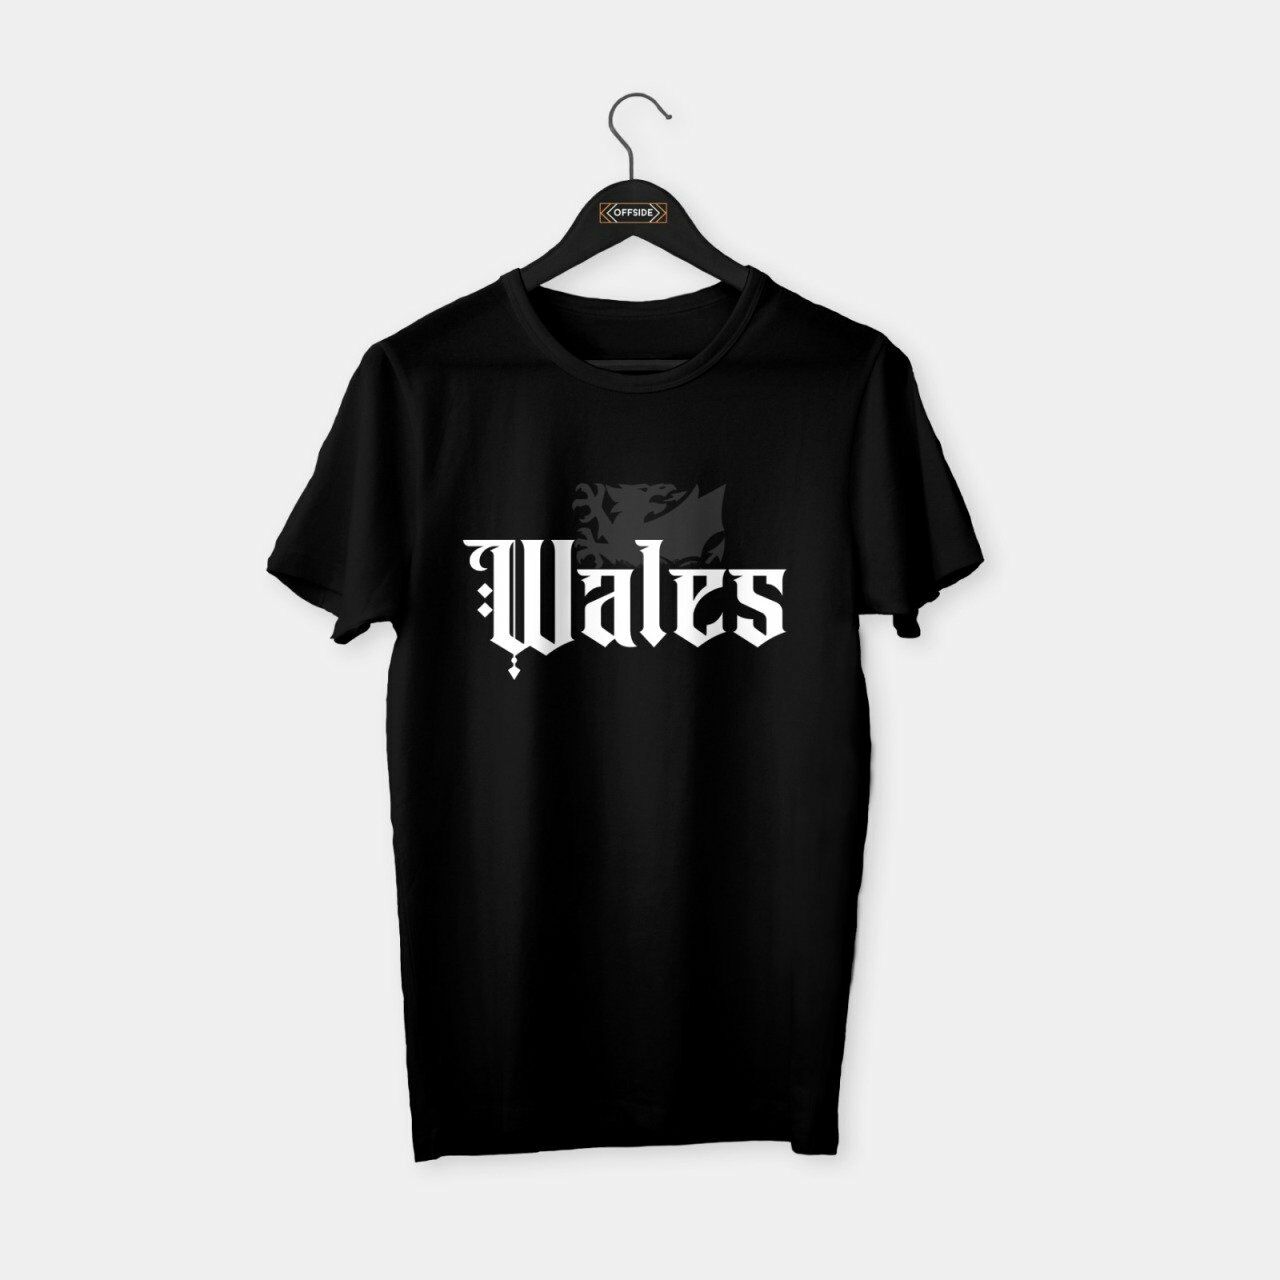 Wales (Galler) T-shirt